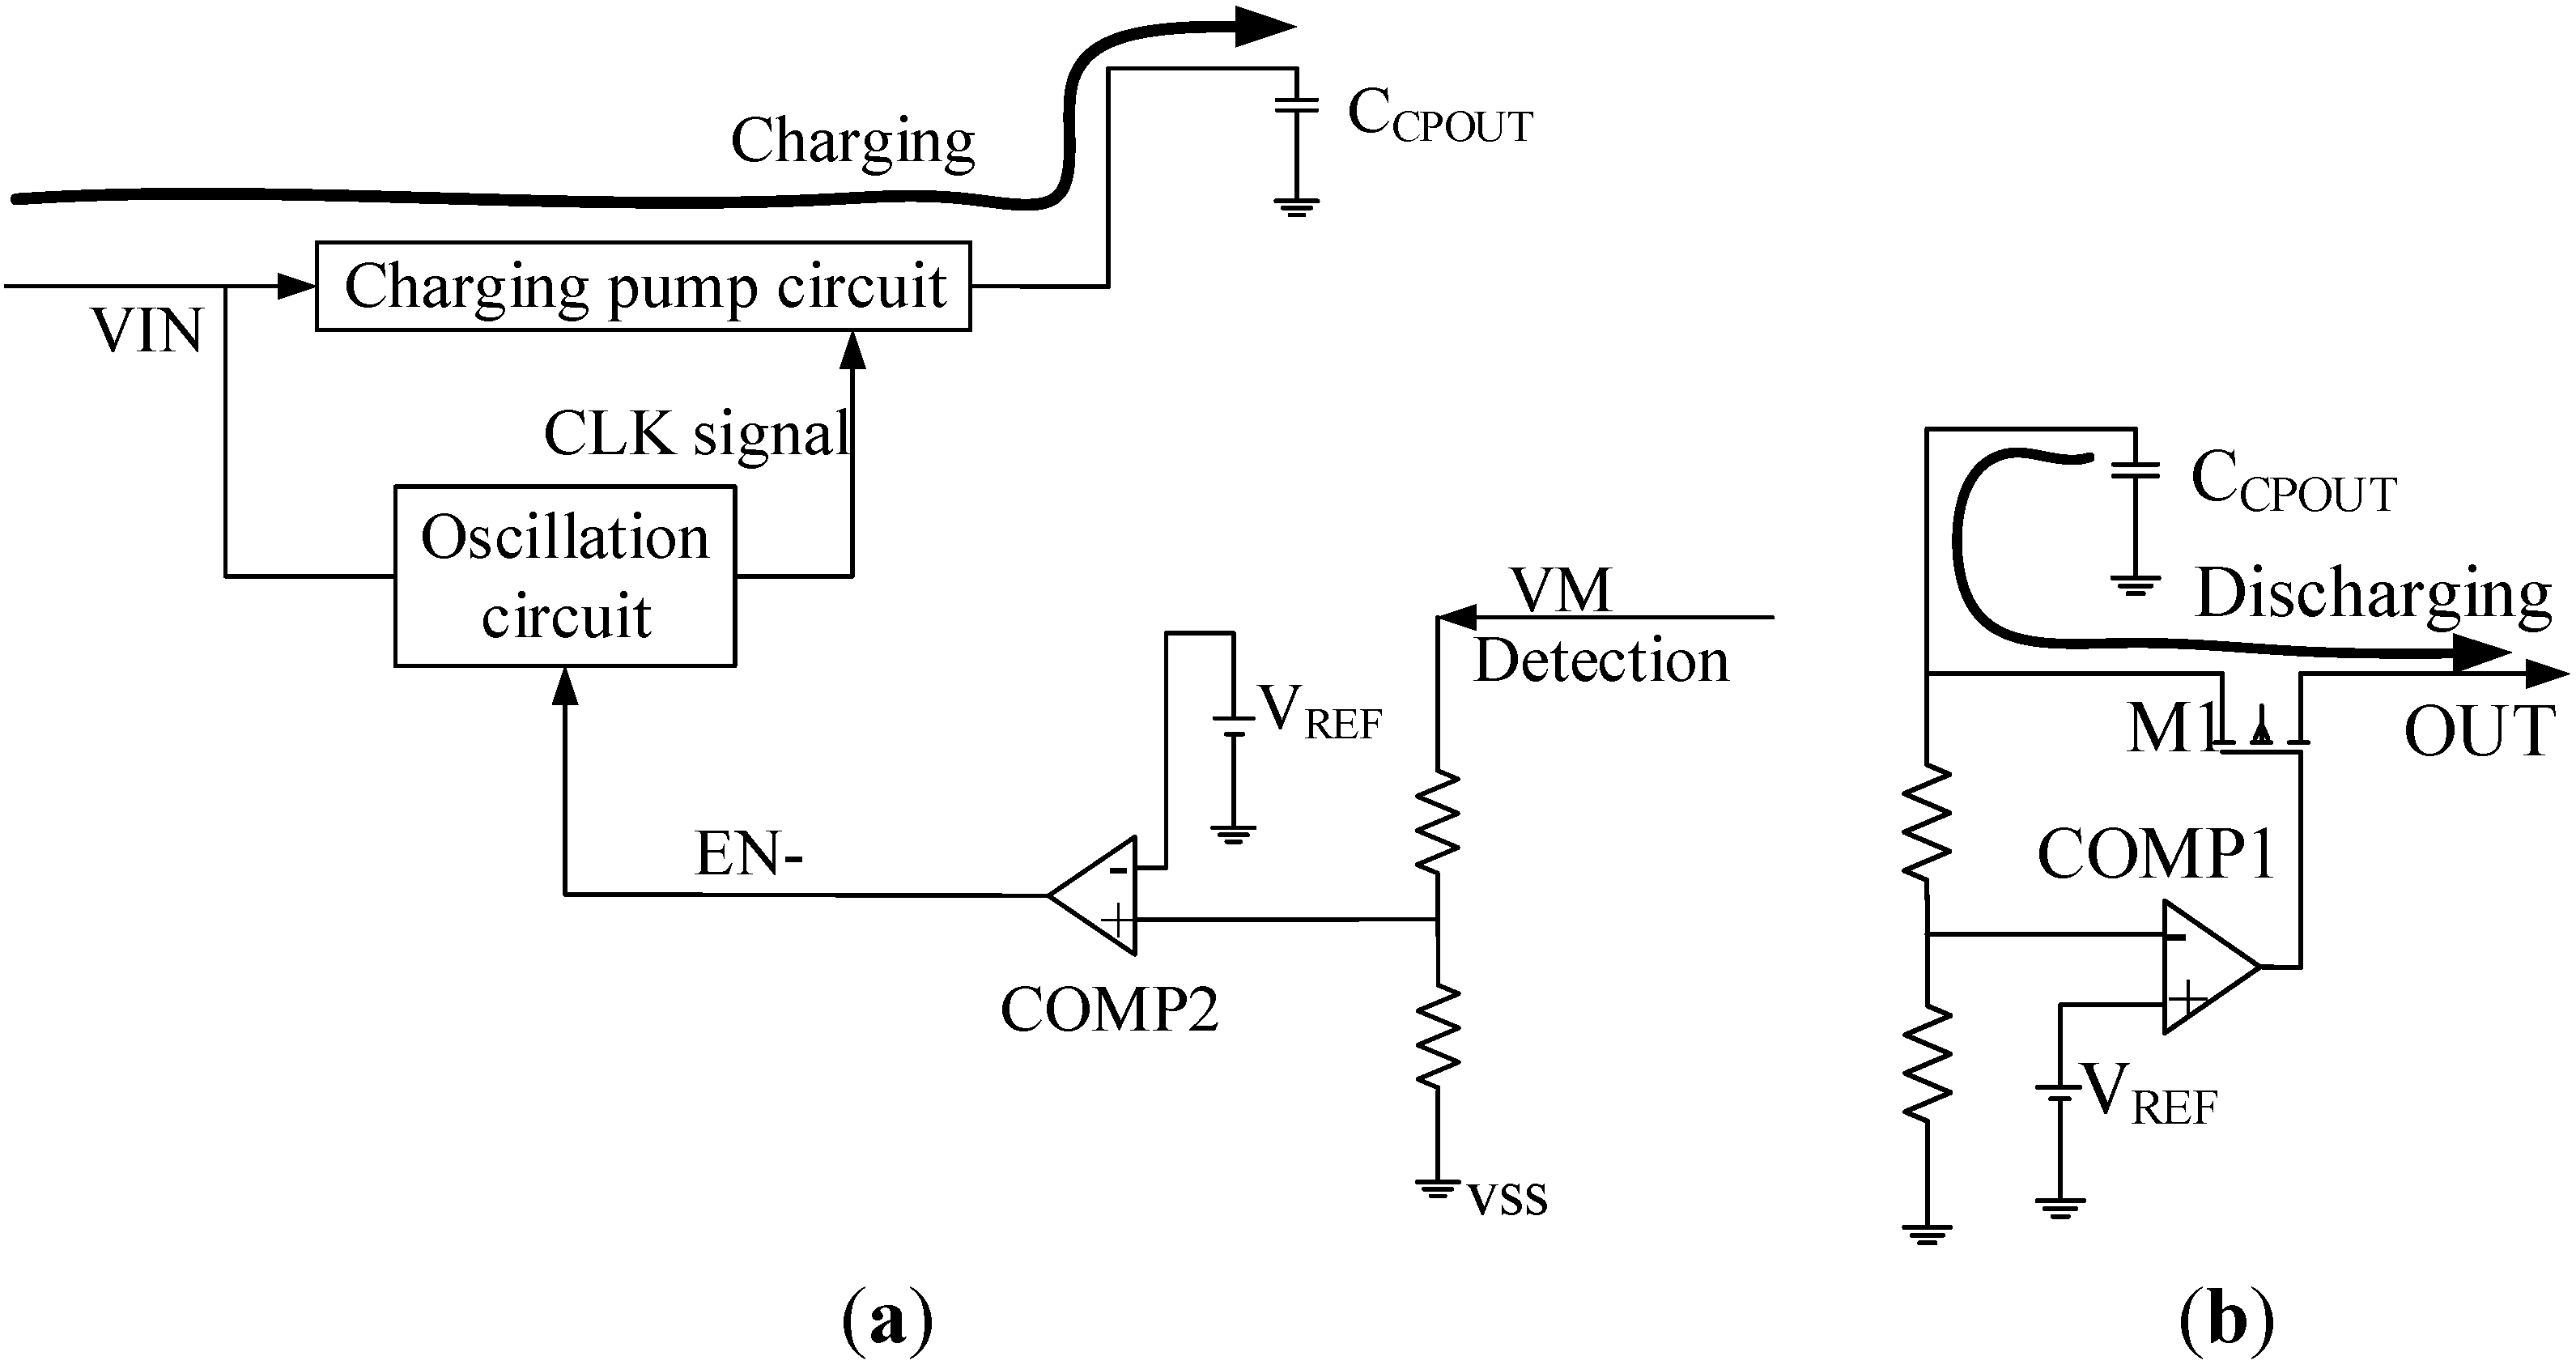 pms3 wiring diagram